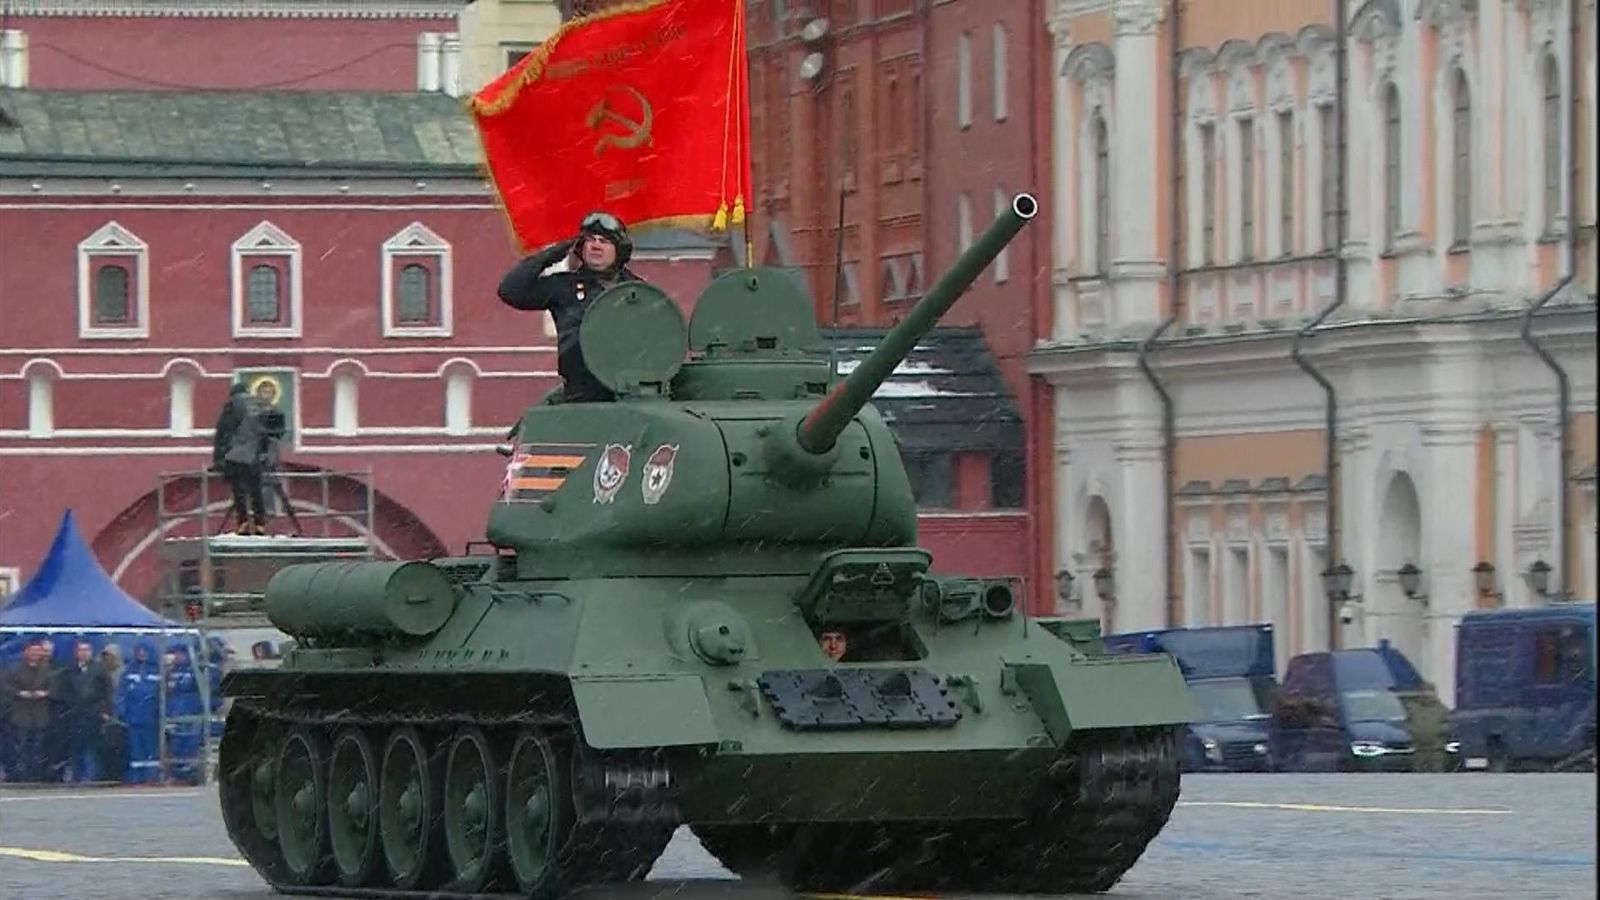 ロシアの戦勝記念日のパレード：ウラジーミル・プーチン大統領、国は「困難な時期」を迎えていると語る中、展示された戦車は1台のみ | 世界のニュース